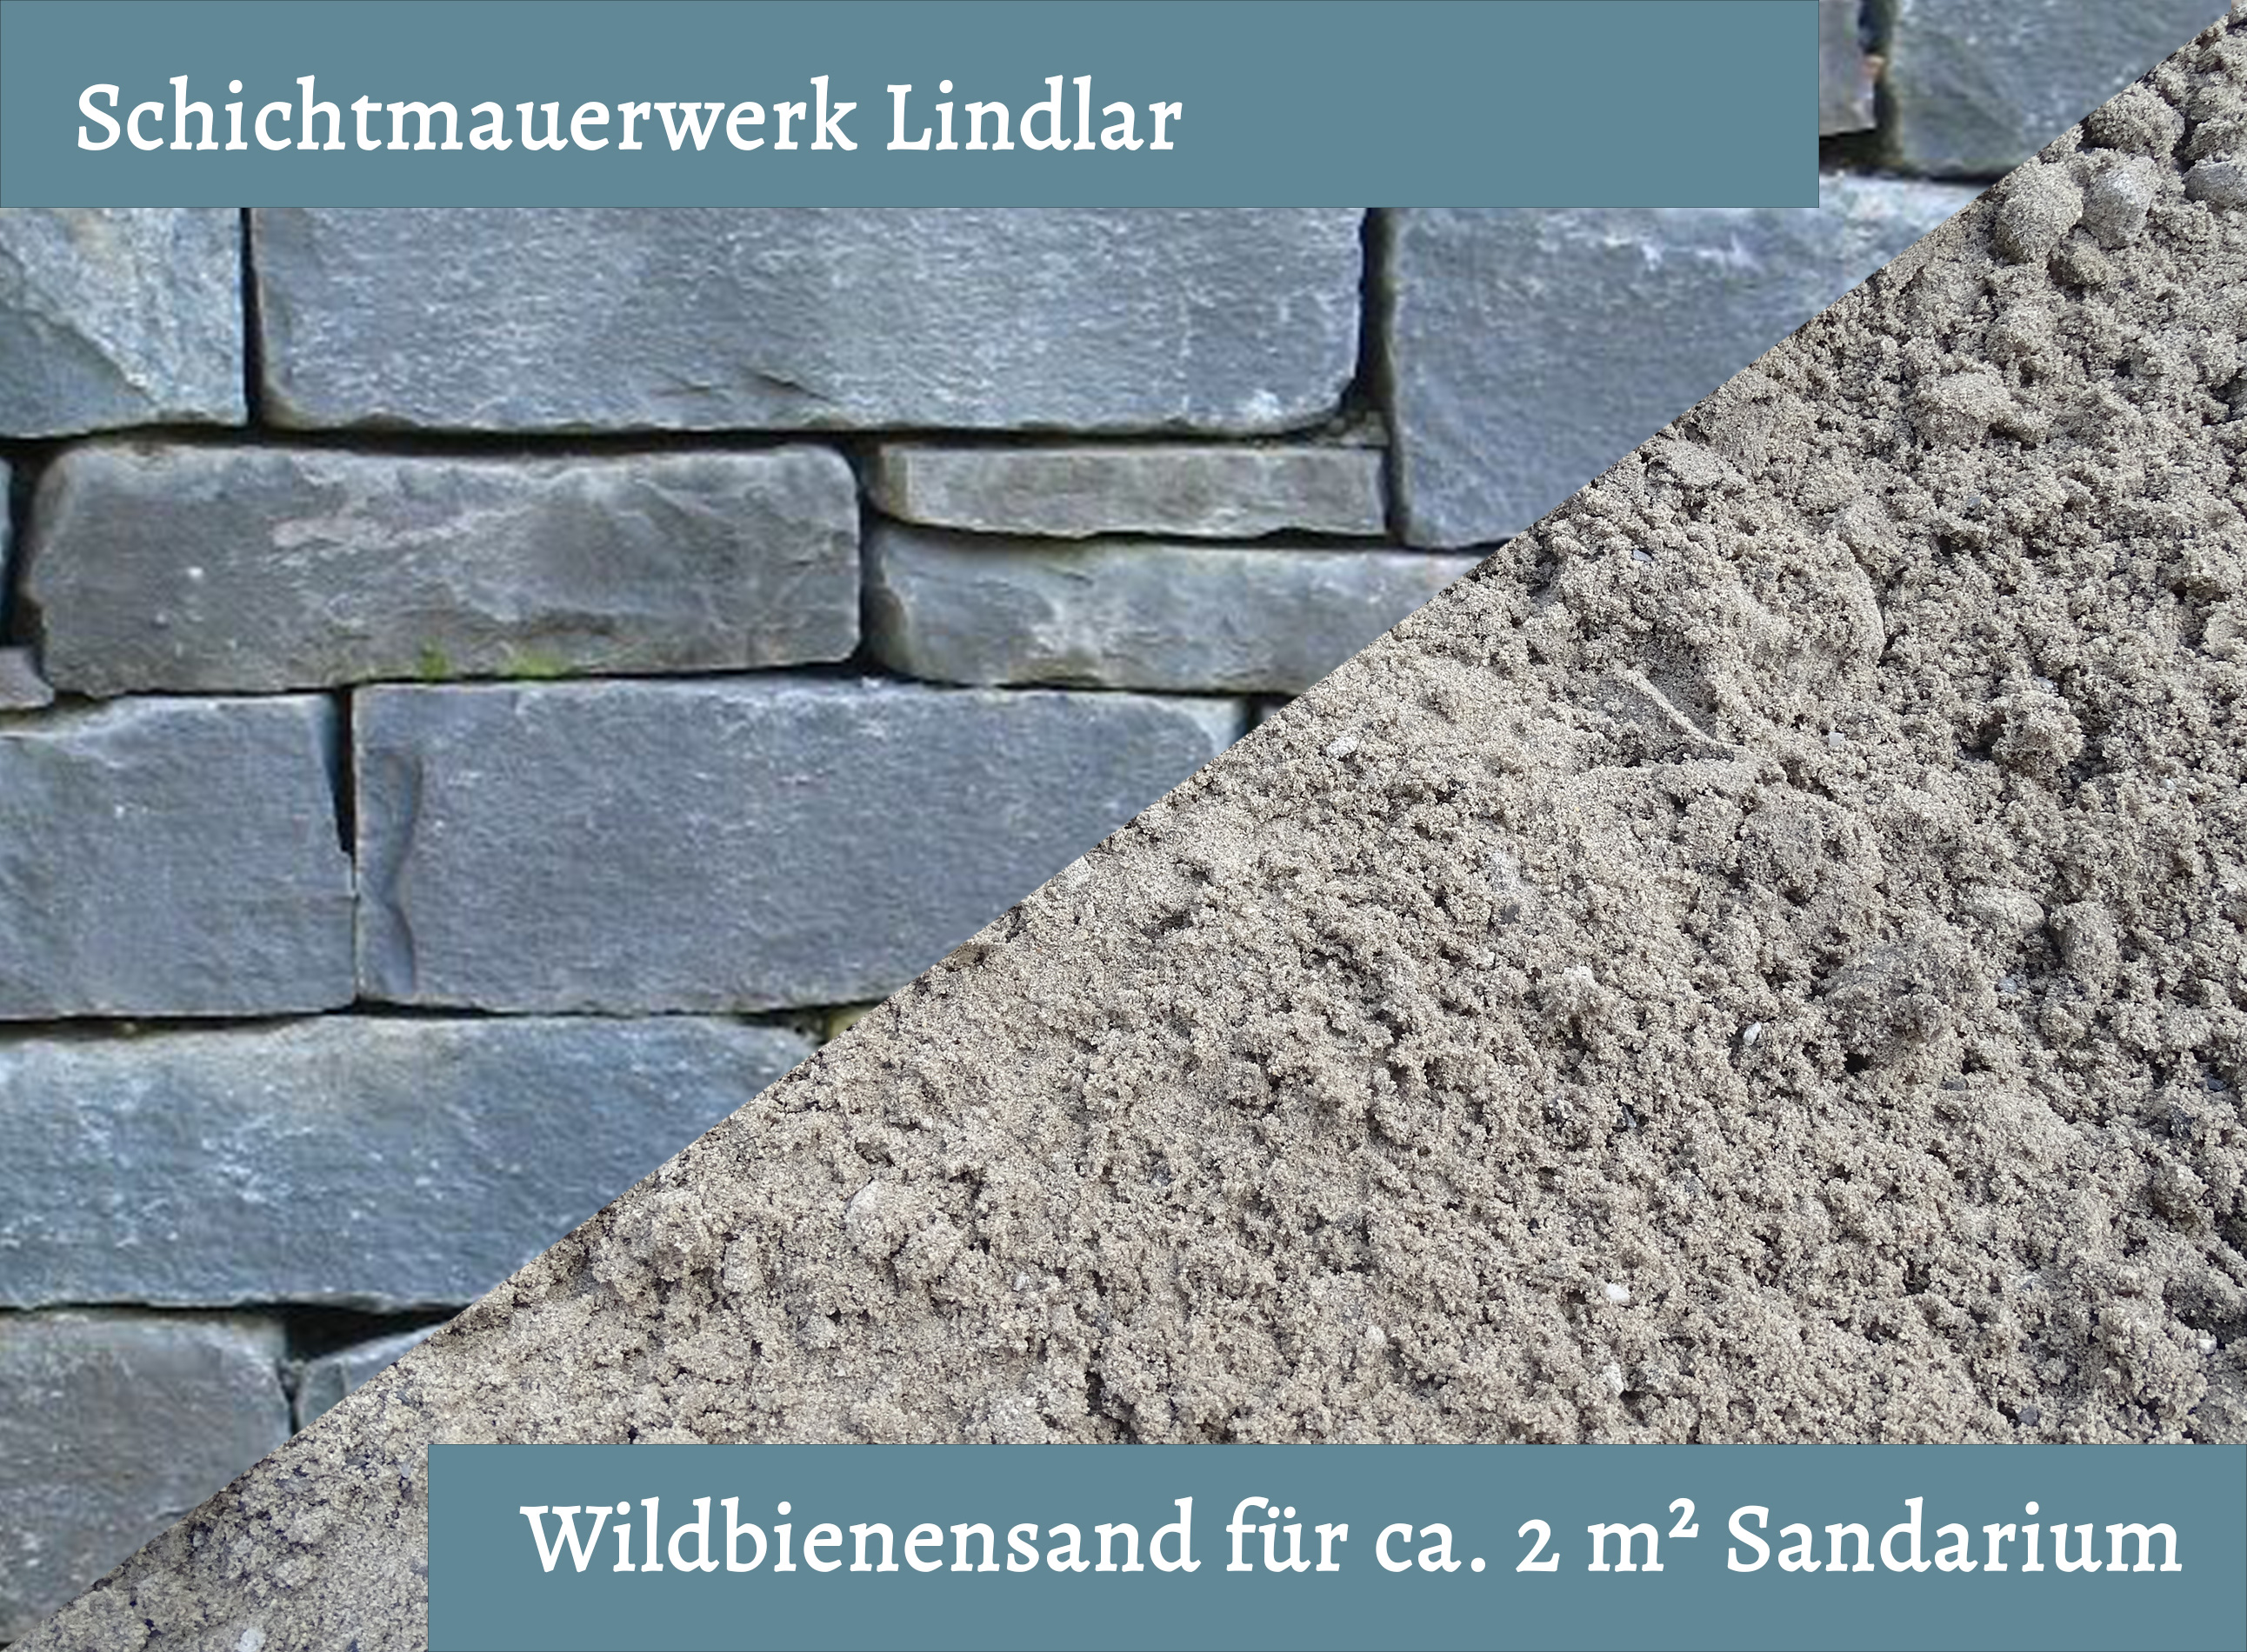 Wildbienensand mit Schichtmauer Lindlar für Sandarium 2,0 m²